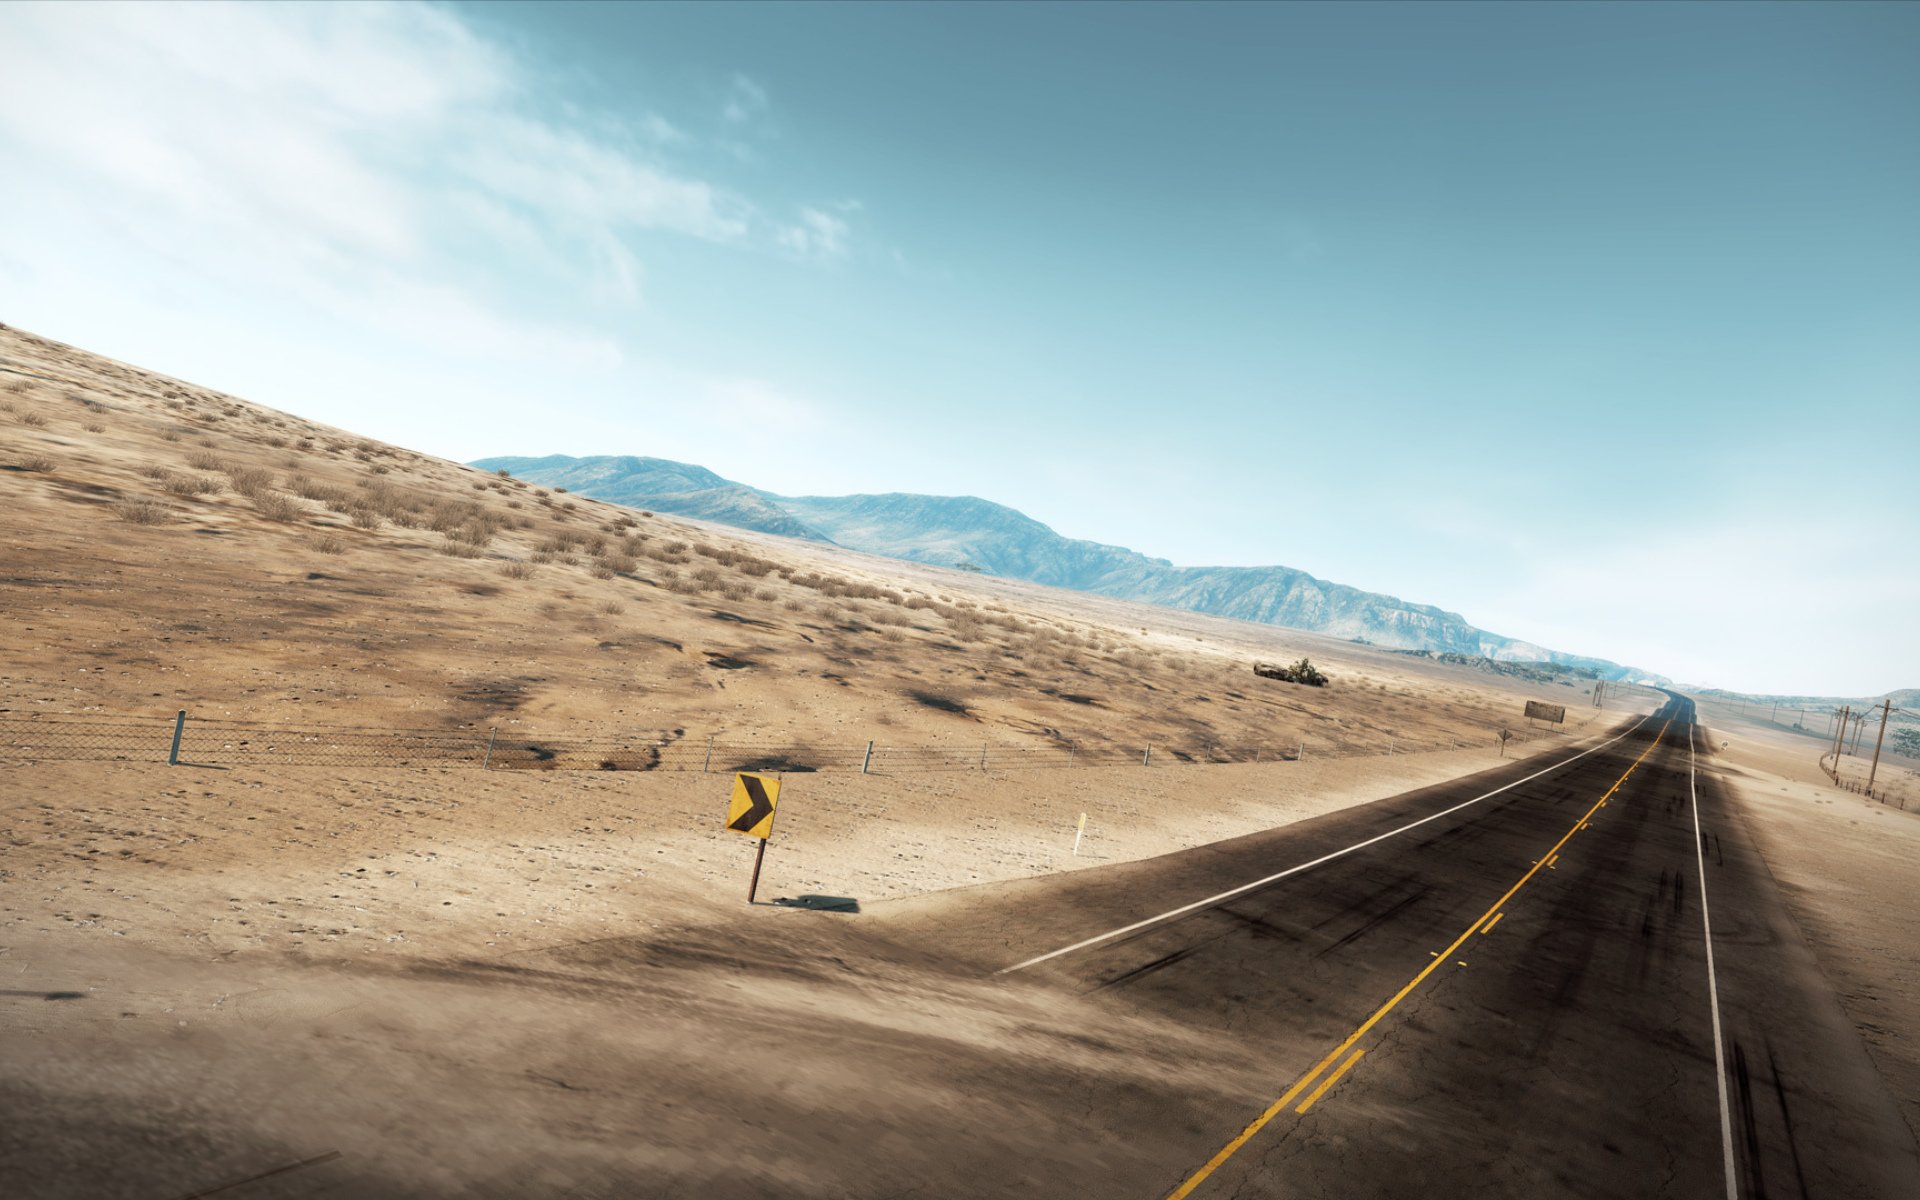 A dusty trip как ехать. Трасса Мохаве. Пустыня с дорогой. Трасса в пустыне. Дорога картинка.